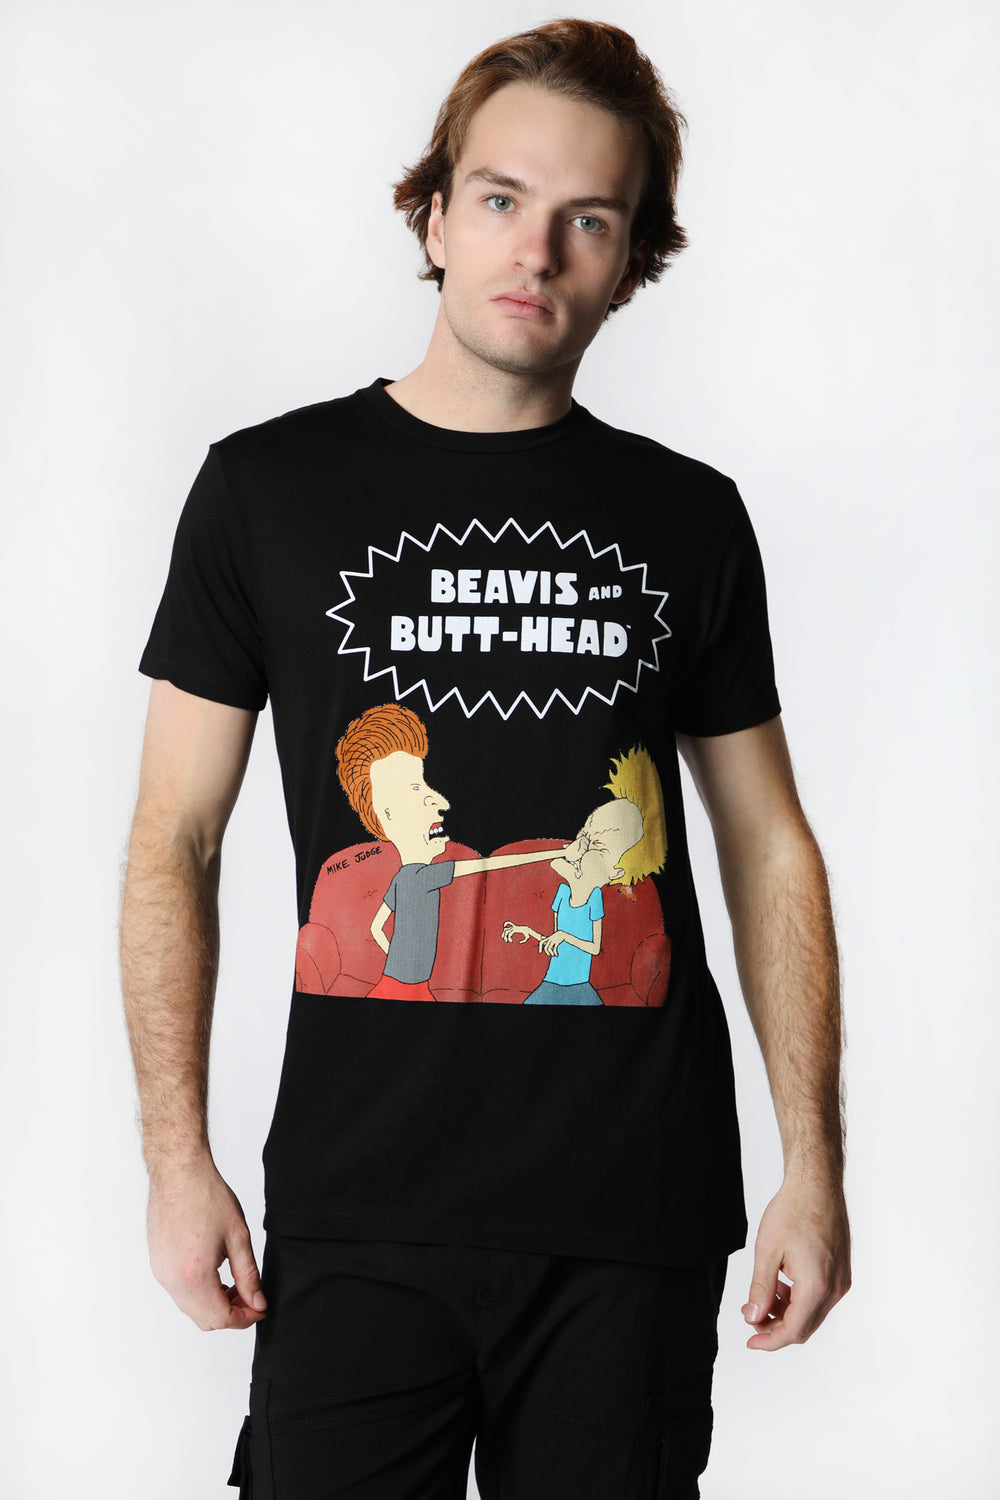 T-Shirt Imprimé Beavis And Butt-Head Homme T-Shirt Imprimé Beavis And Butt-Head Homme